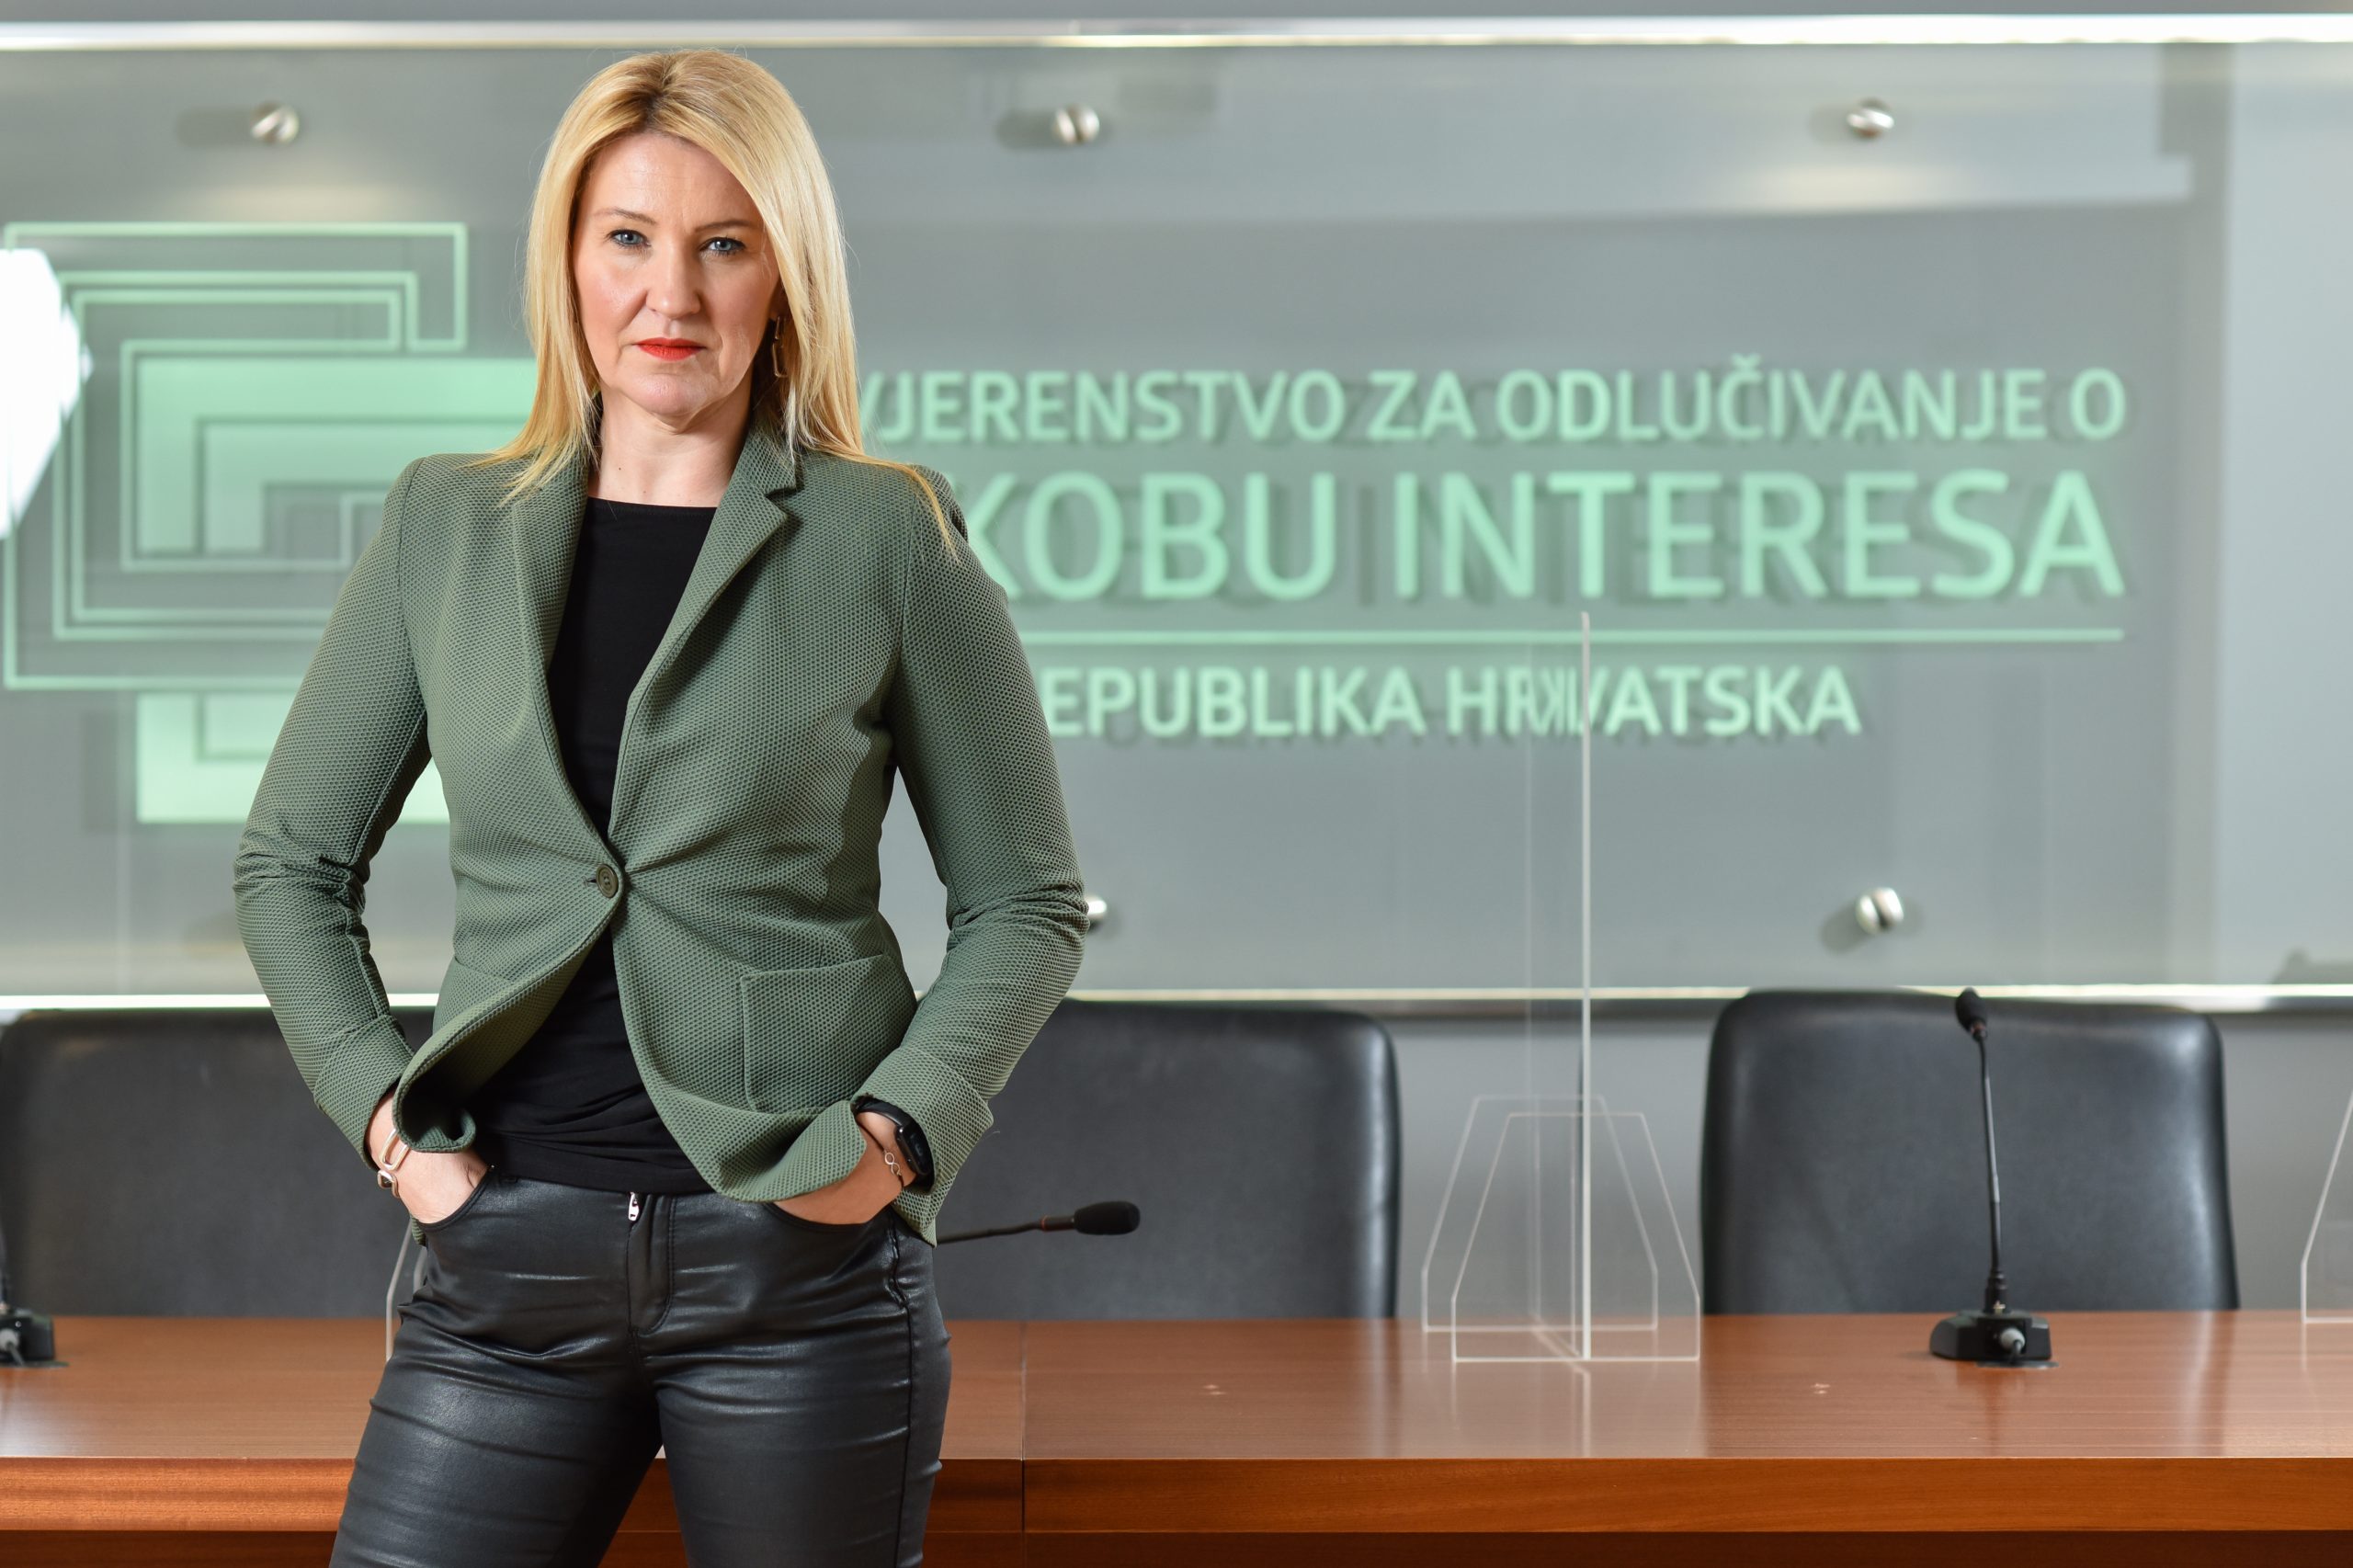 11.02.2021., Zagreb - Natasa Novakovic, predsjednica Povjerenstva za odlucivanje o sukobu interesa.

Photo: Sasa Zinaja/NFoto/PIXSELL